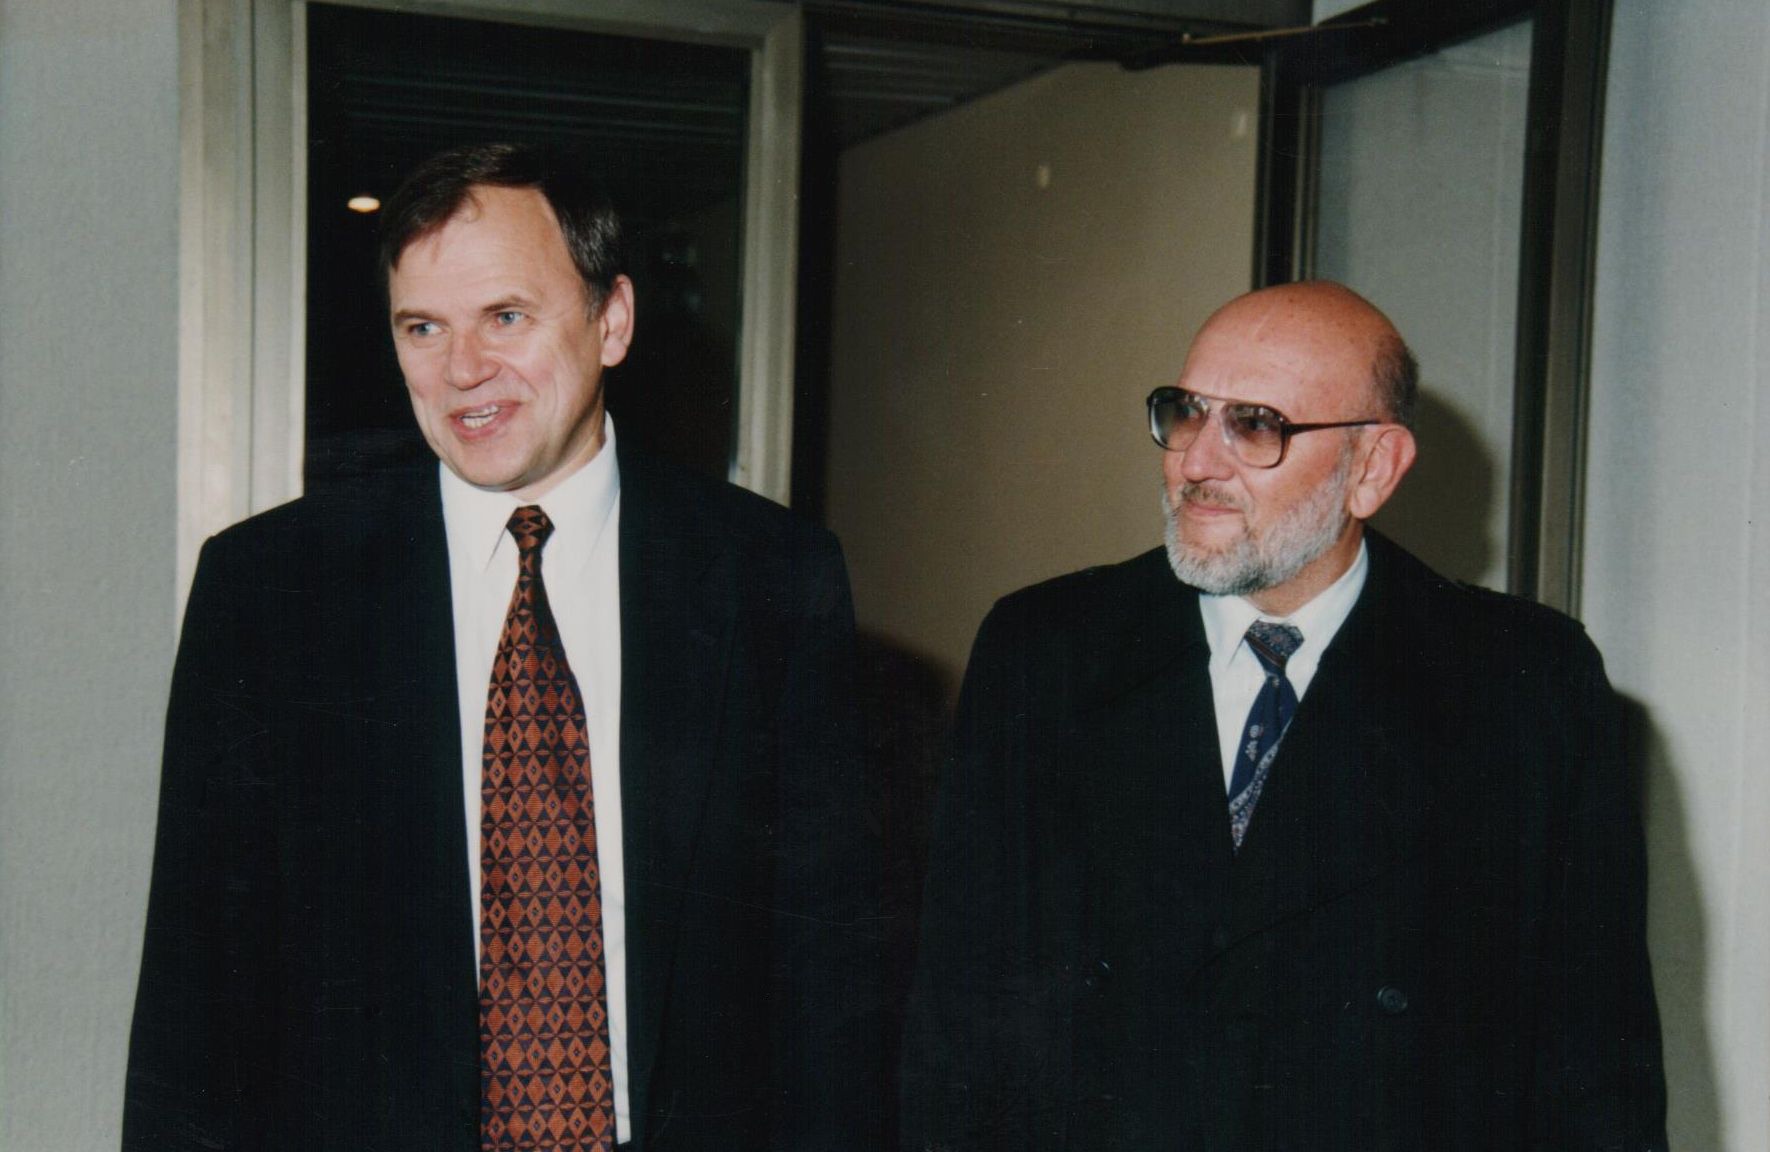 Su geru bičiuliu, bendražygiu, Seimo nariu Vyteniu Andriukaičiu LR Seime. 1998 m. gegužė.